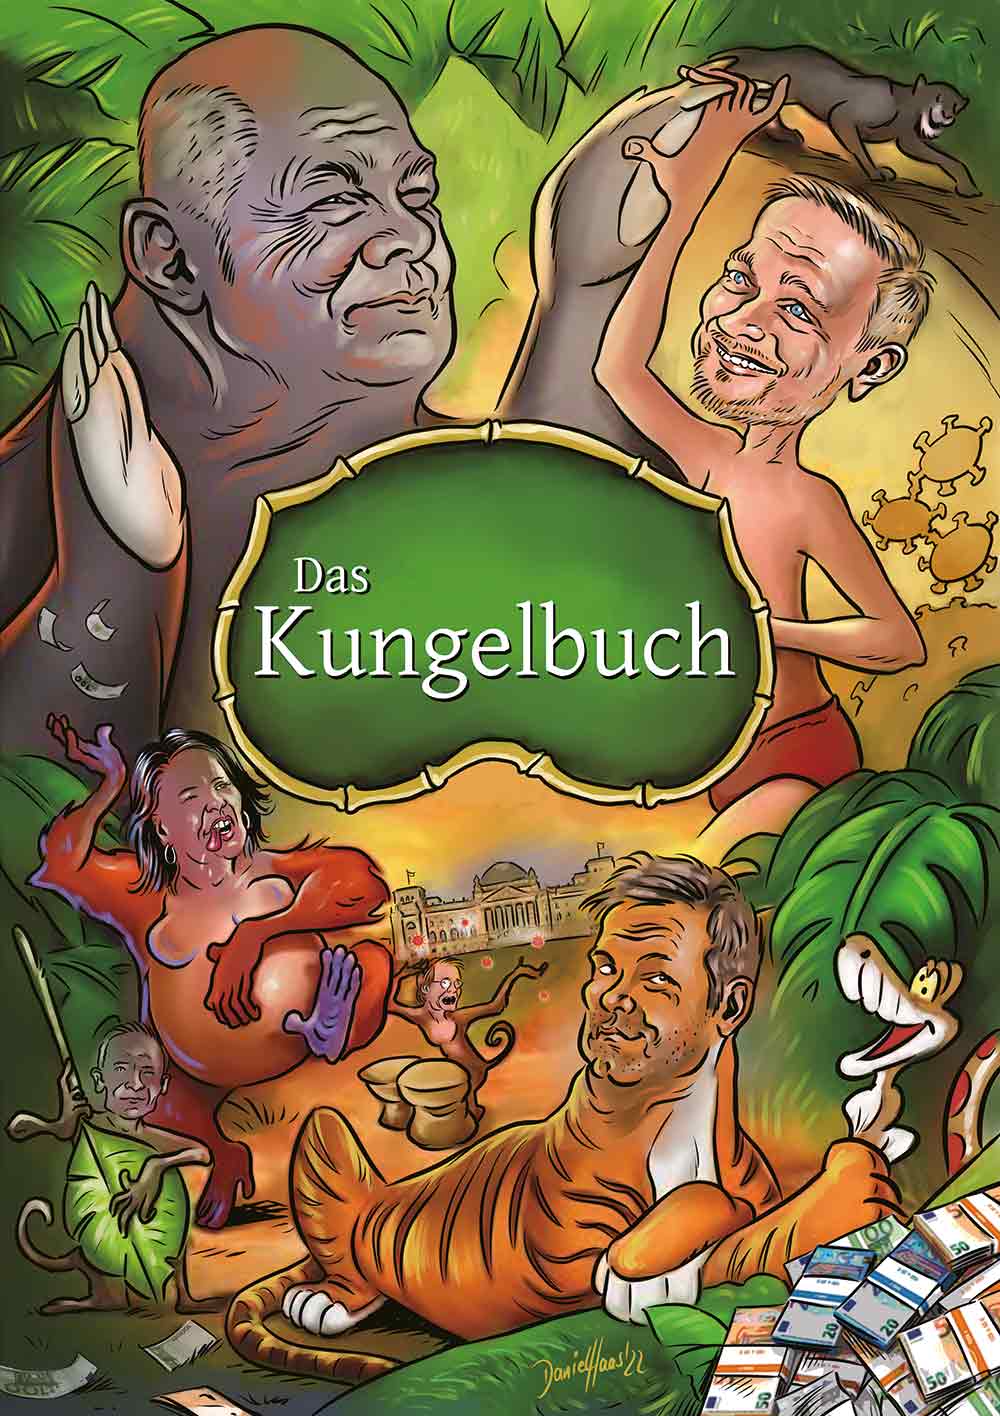 Das Kungelbuch - Poster